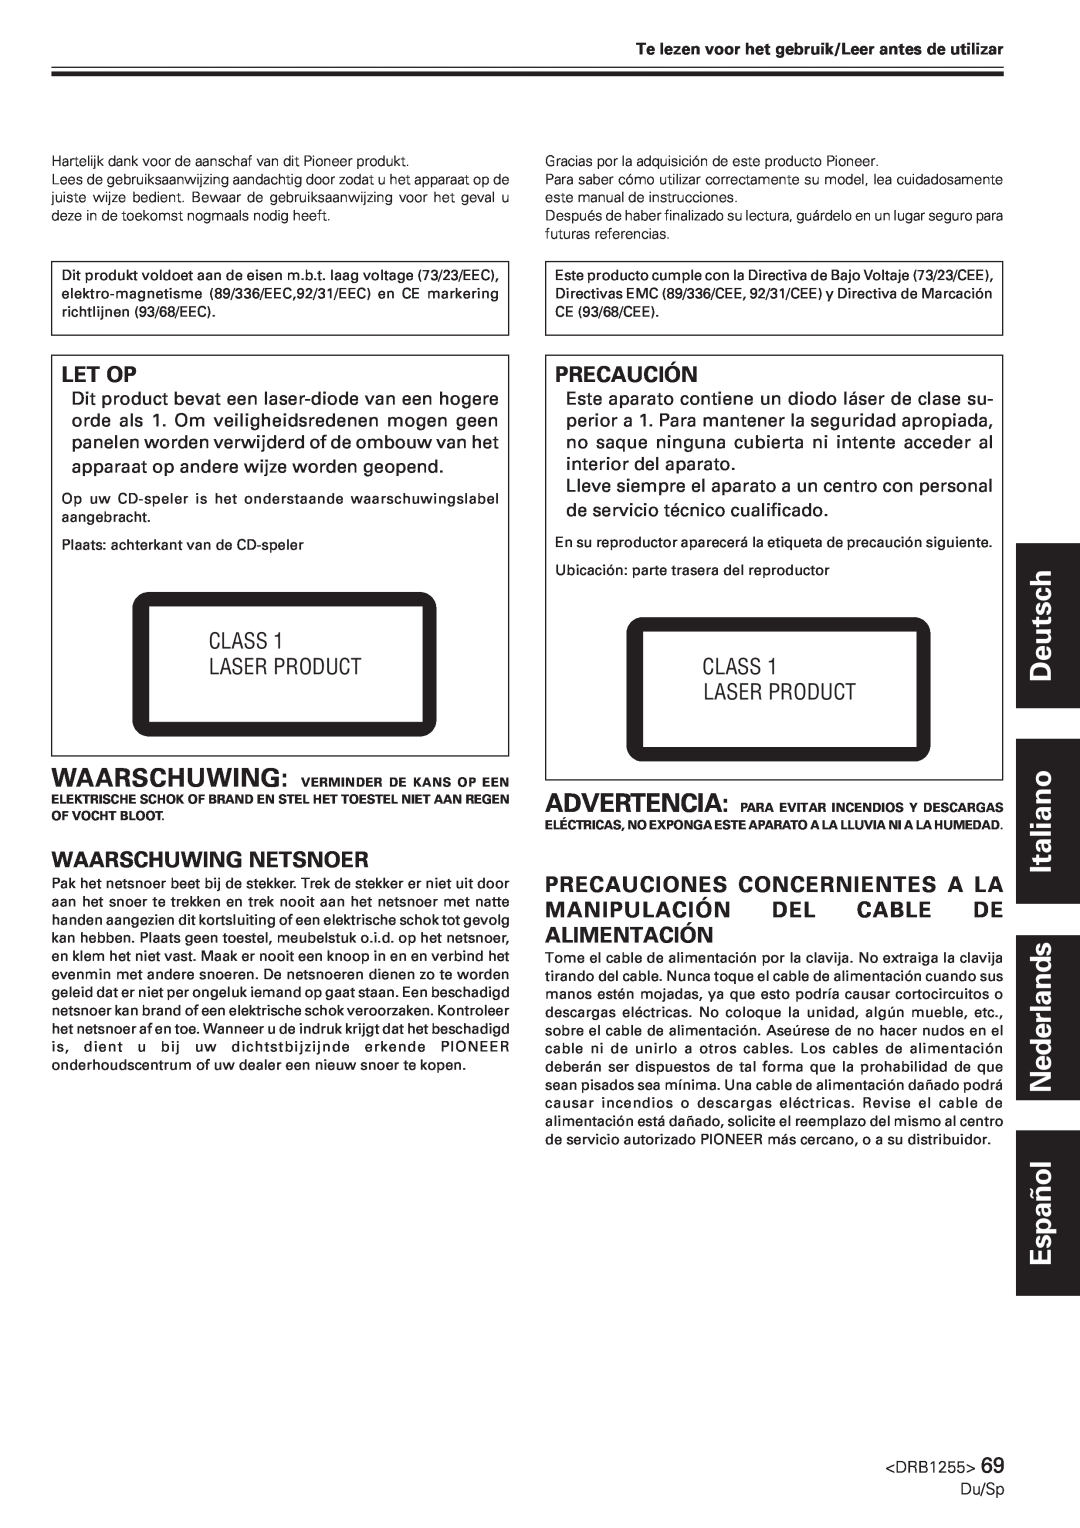 Pioneer CMX-5000 manual Deutsch Español Nederlands Italiano, Let Op, Waarschuwing Netsnoer, Precaución, Class Laser Product 